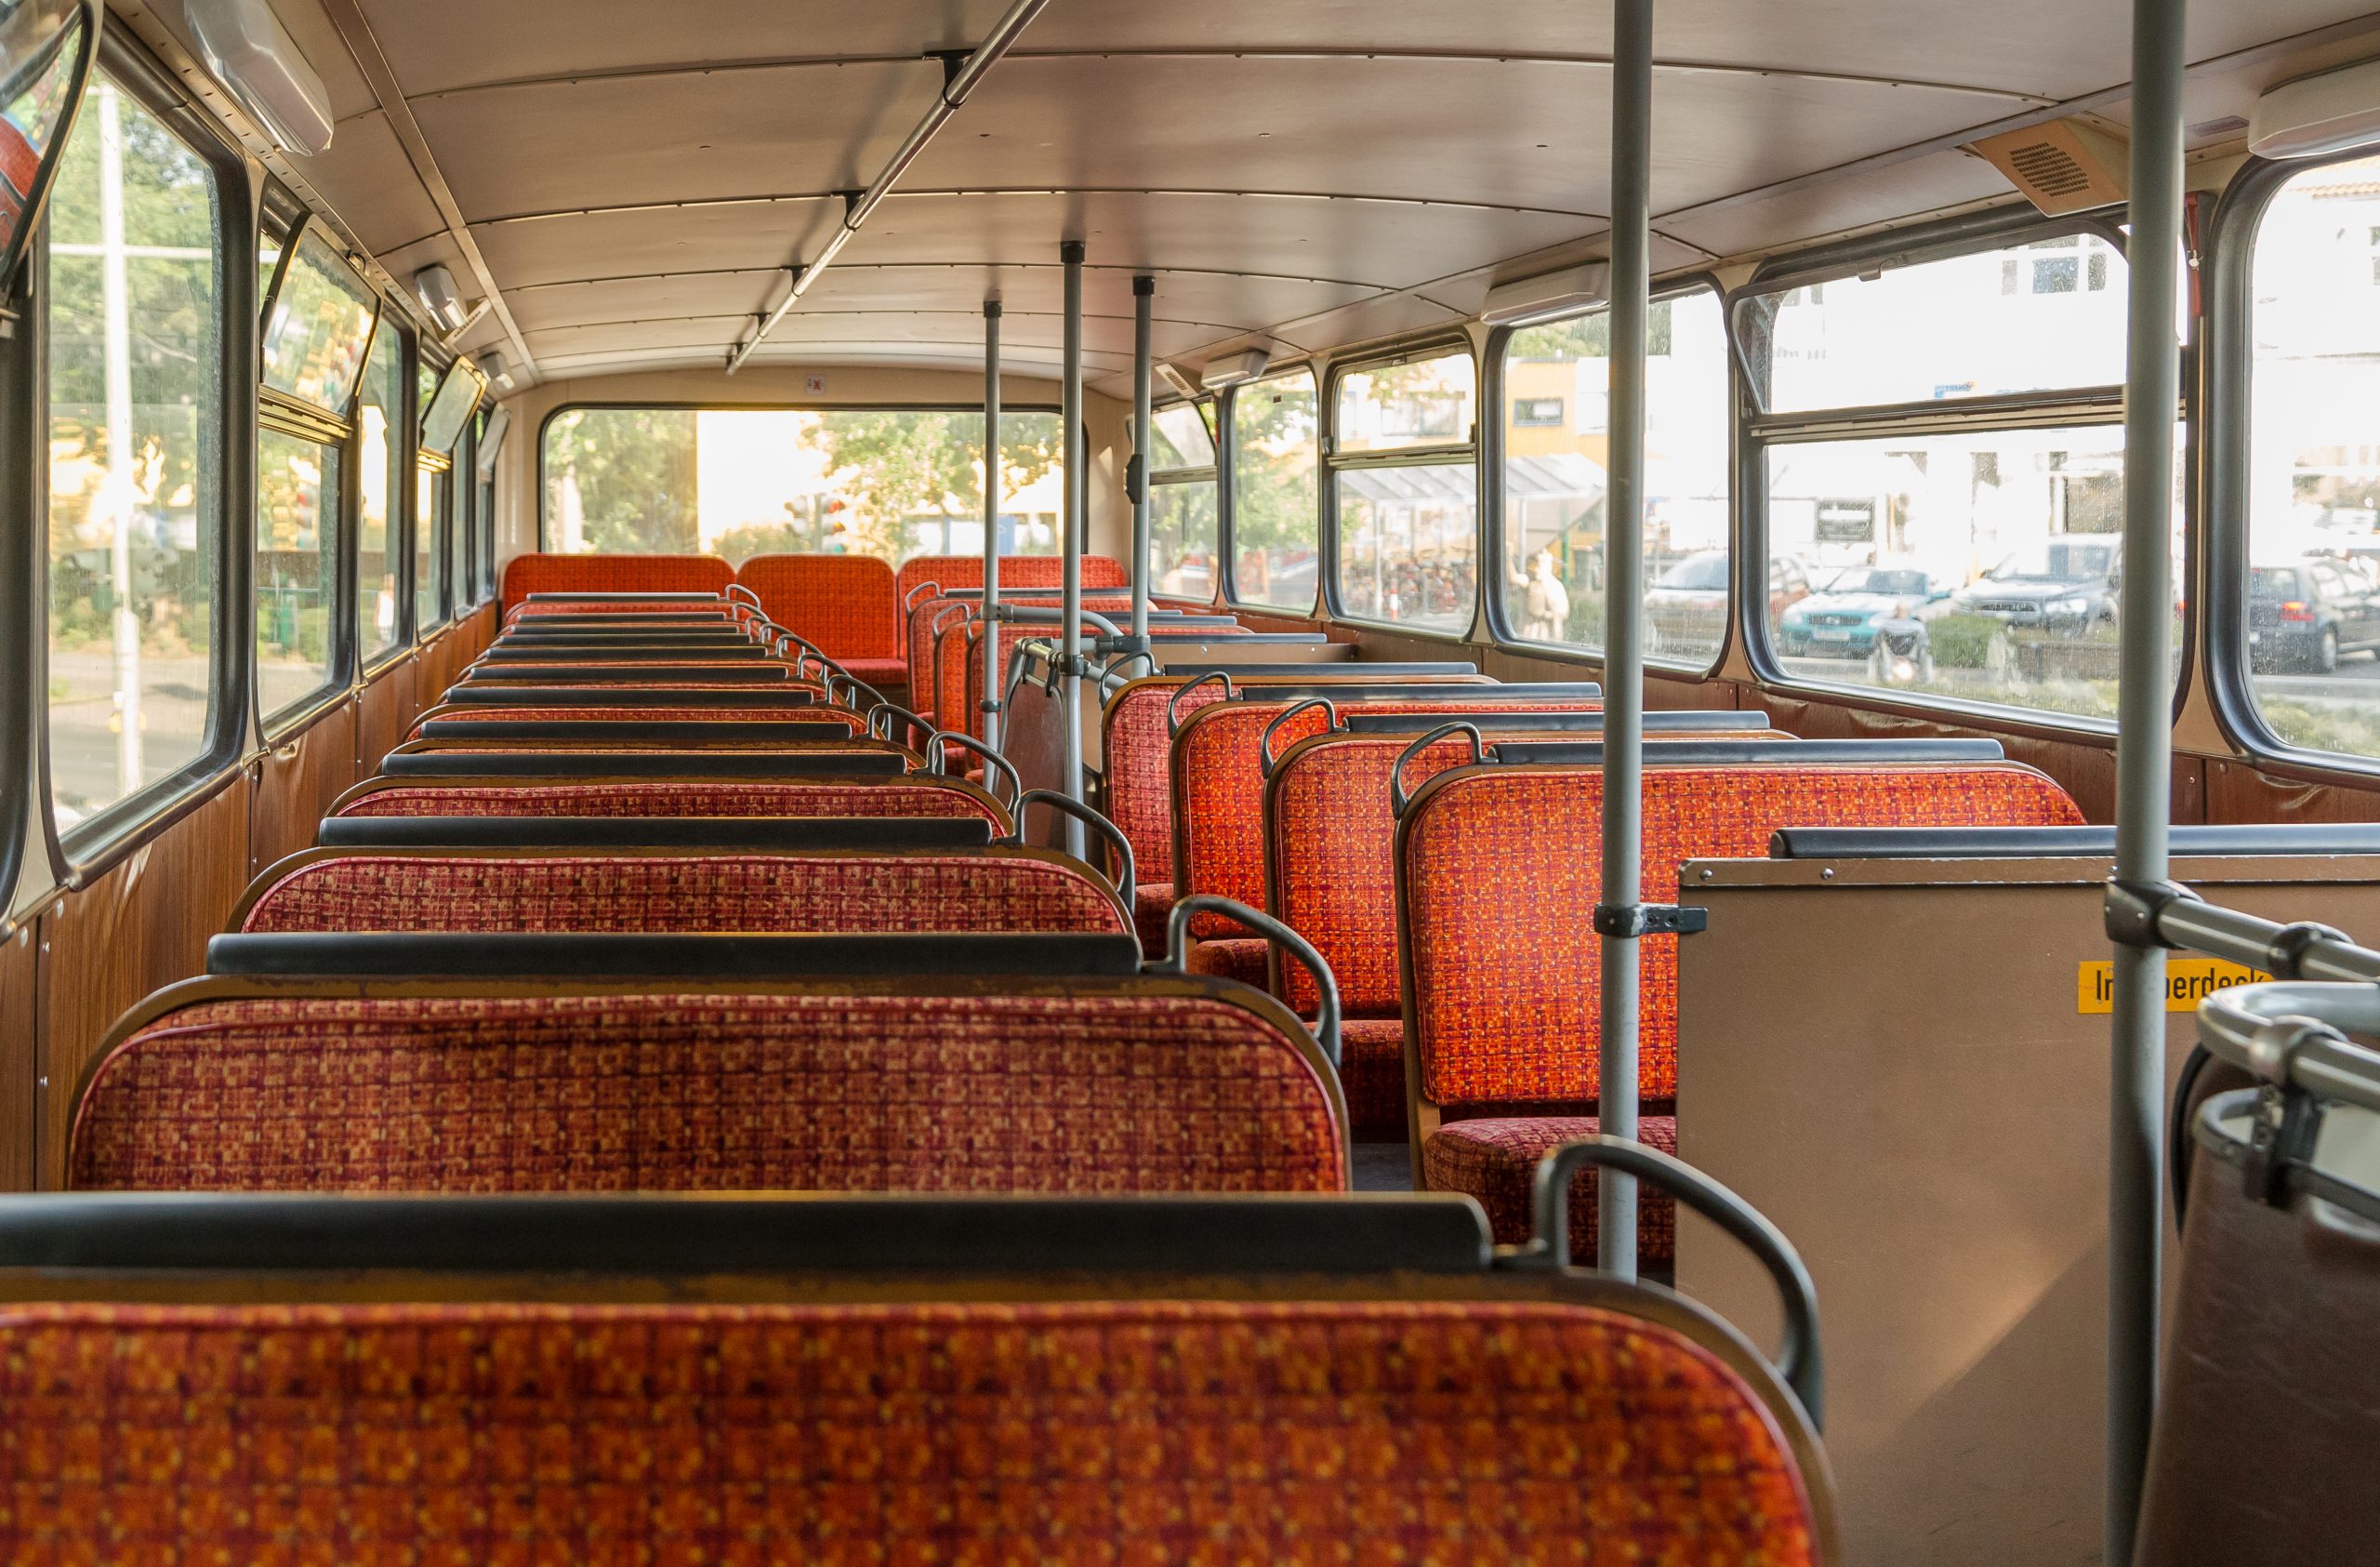 interior of a school bus